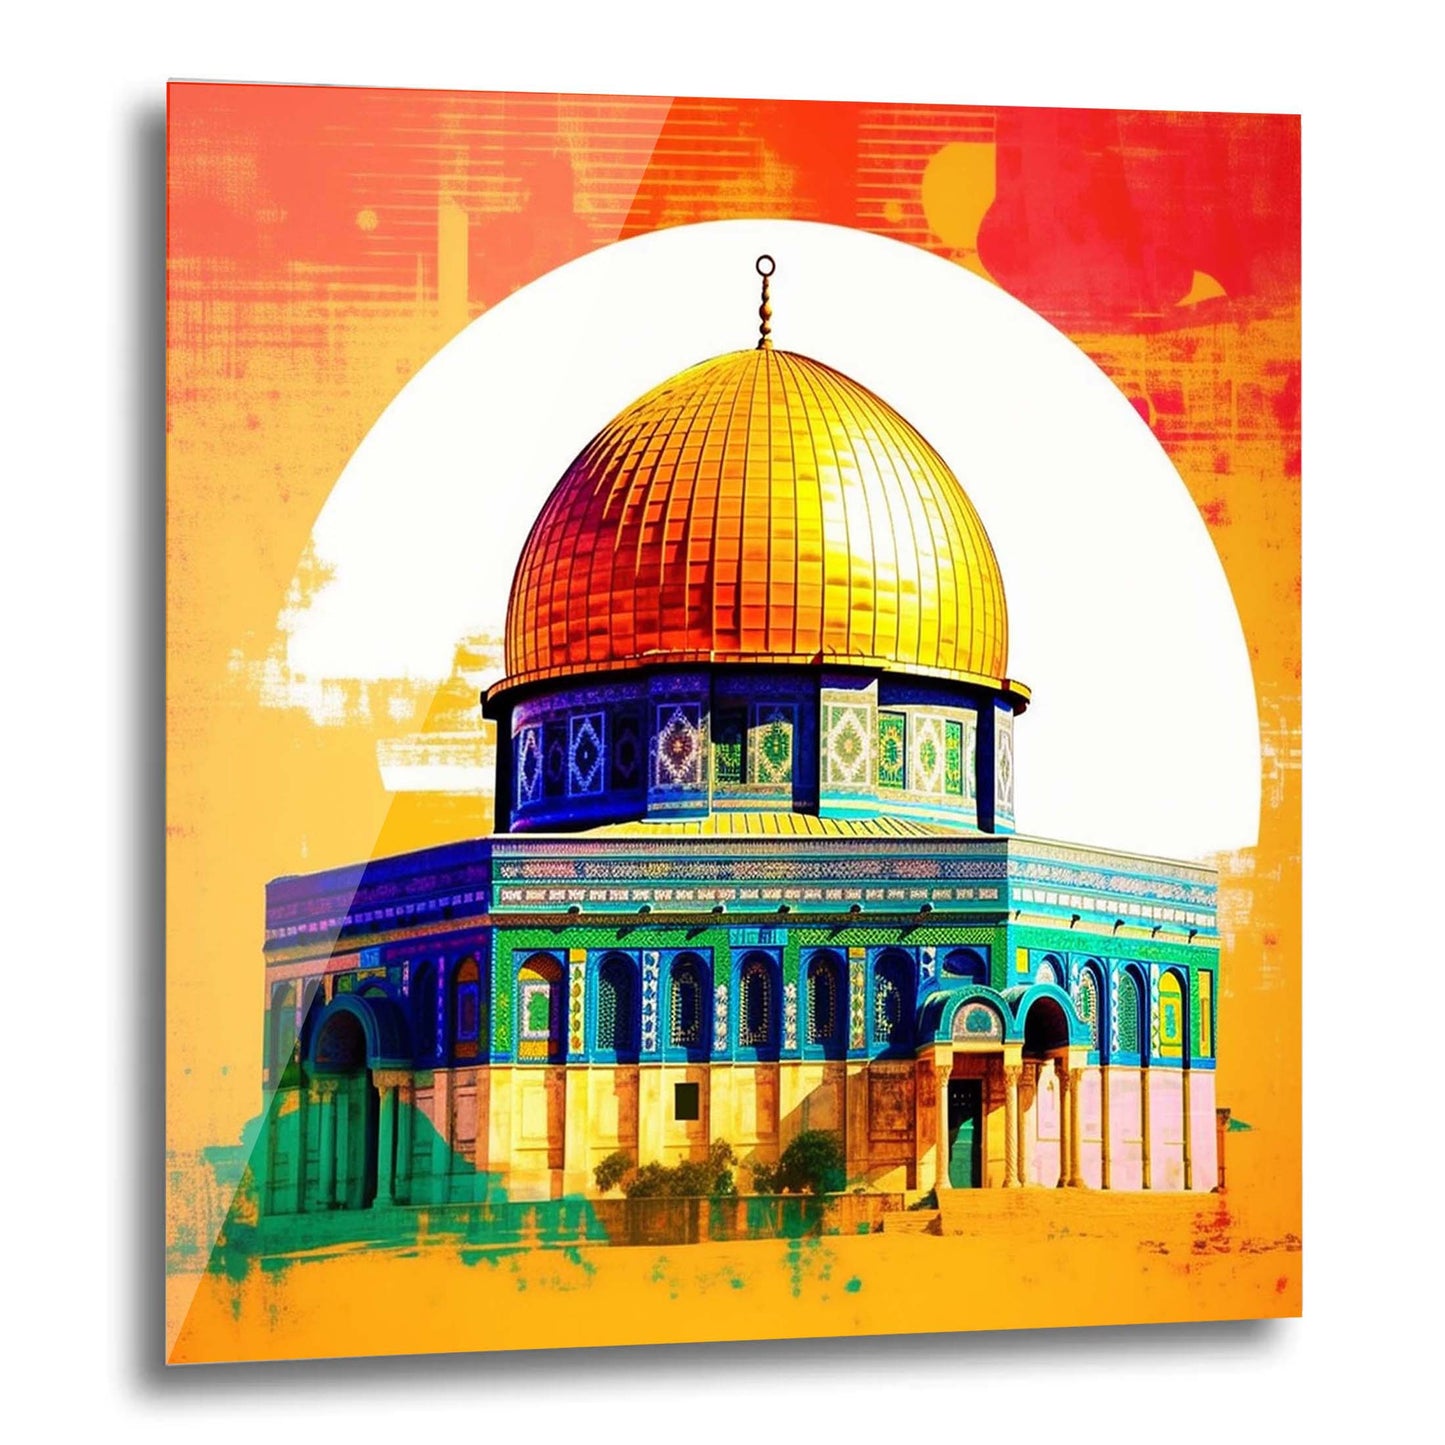 Jerusalem Felsendom - Wandbild in der Stilrichtung der Pop-Art